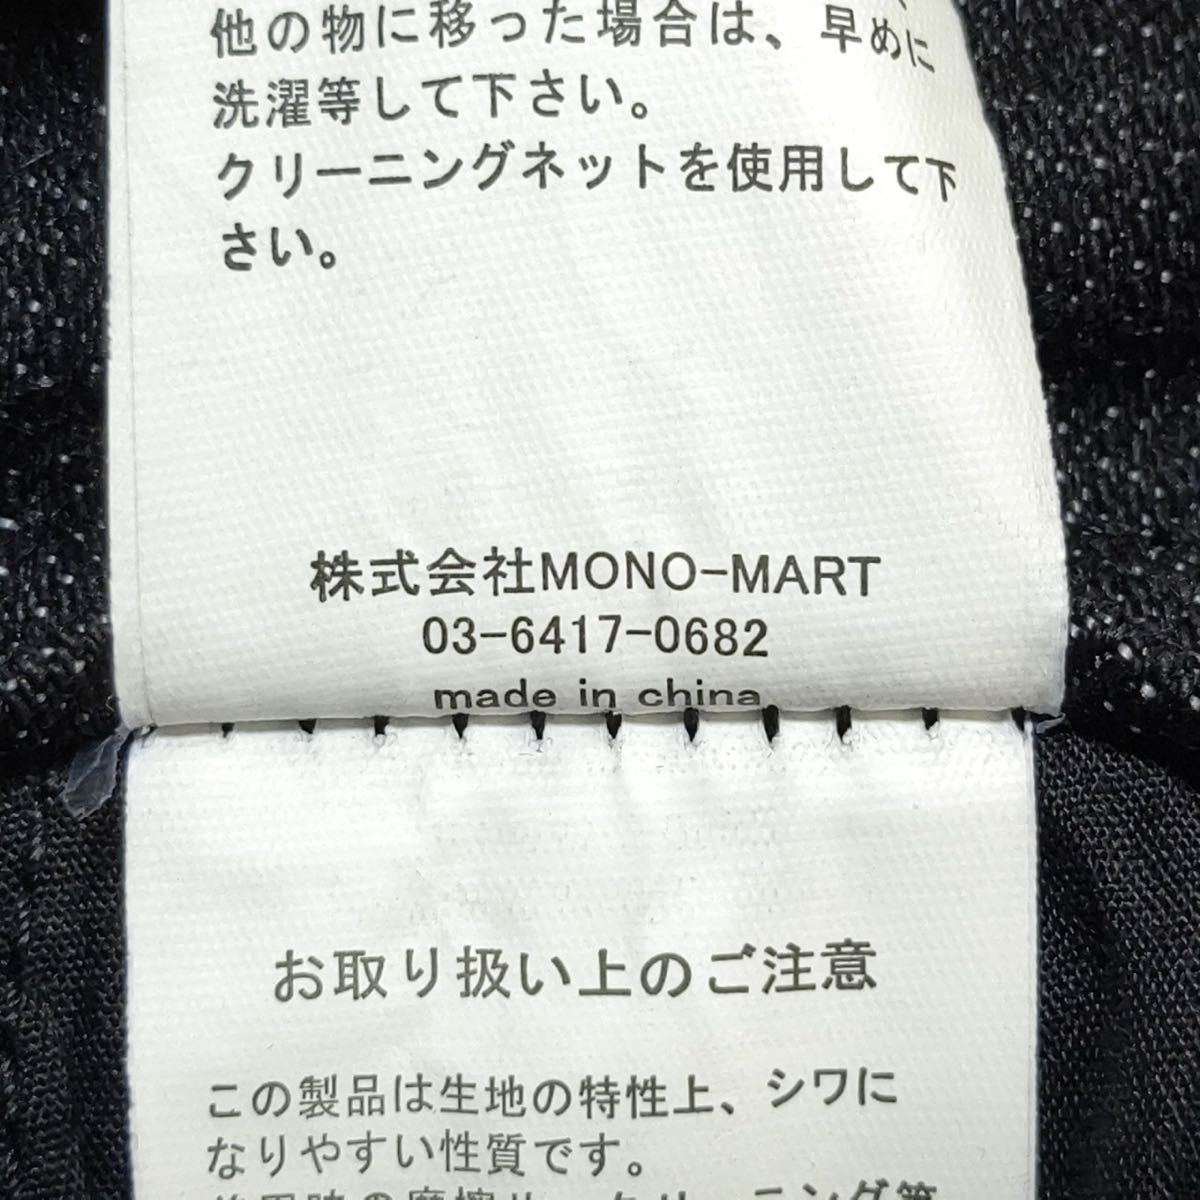 【EMMA CLOTHES】エマクローズ ブラック デニム パンツ MONO-MARTモノマート リネン混合素材 イージー スキニー メンズ サイズL/11839j_画像10